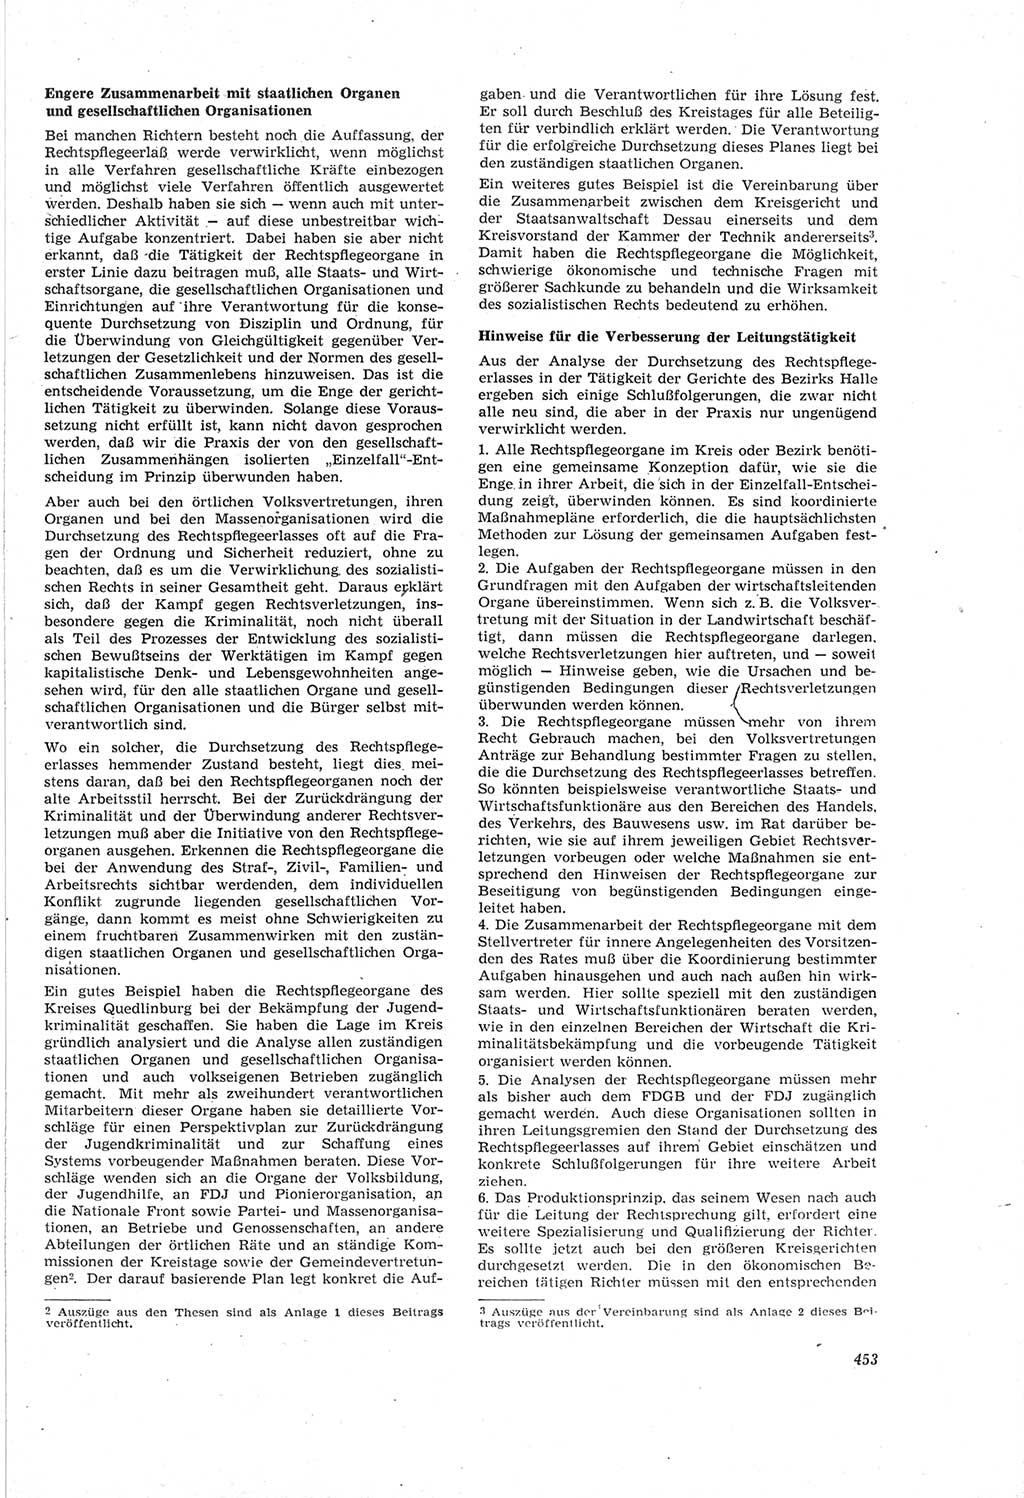 Neue Justiz (NJ), Zeitschrift für Recht und Rechtswissenschaft [Deutsche Demokratische Republik (DDR)], 18. Jahrgang 1964, Seite 453 (NJ DDR 1964, S. 453)